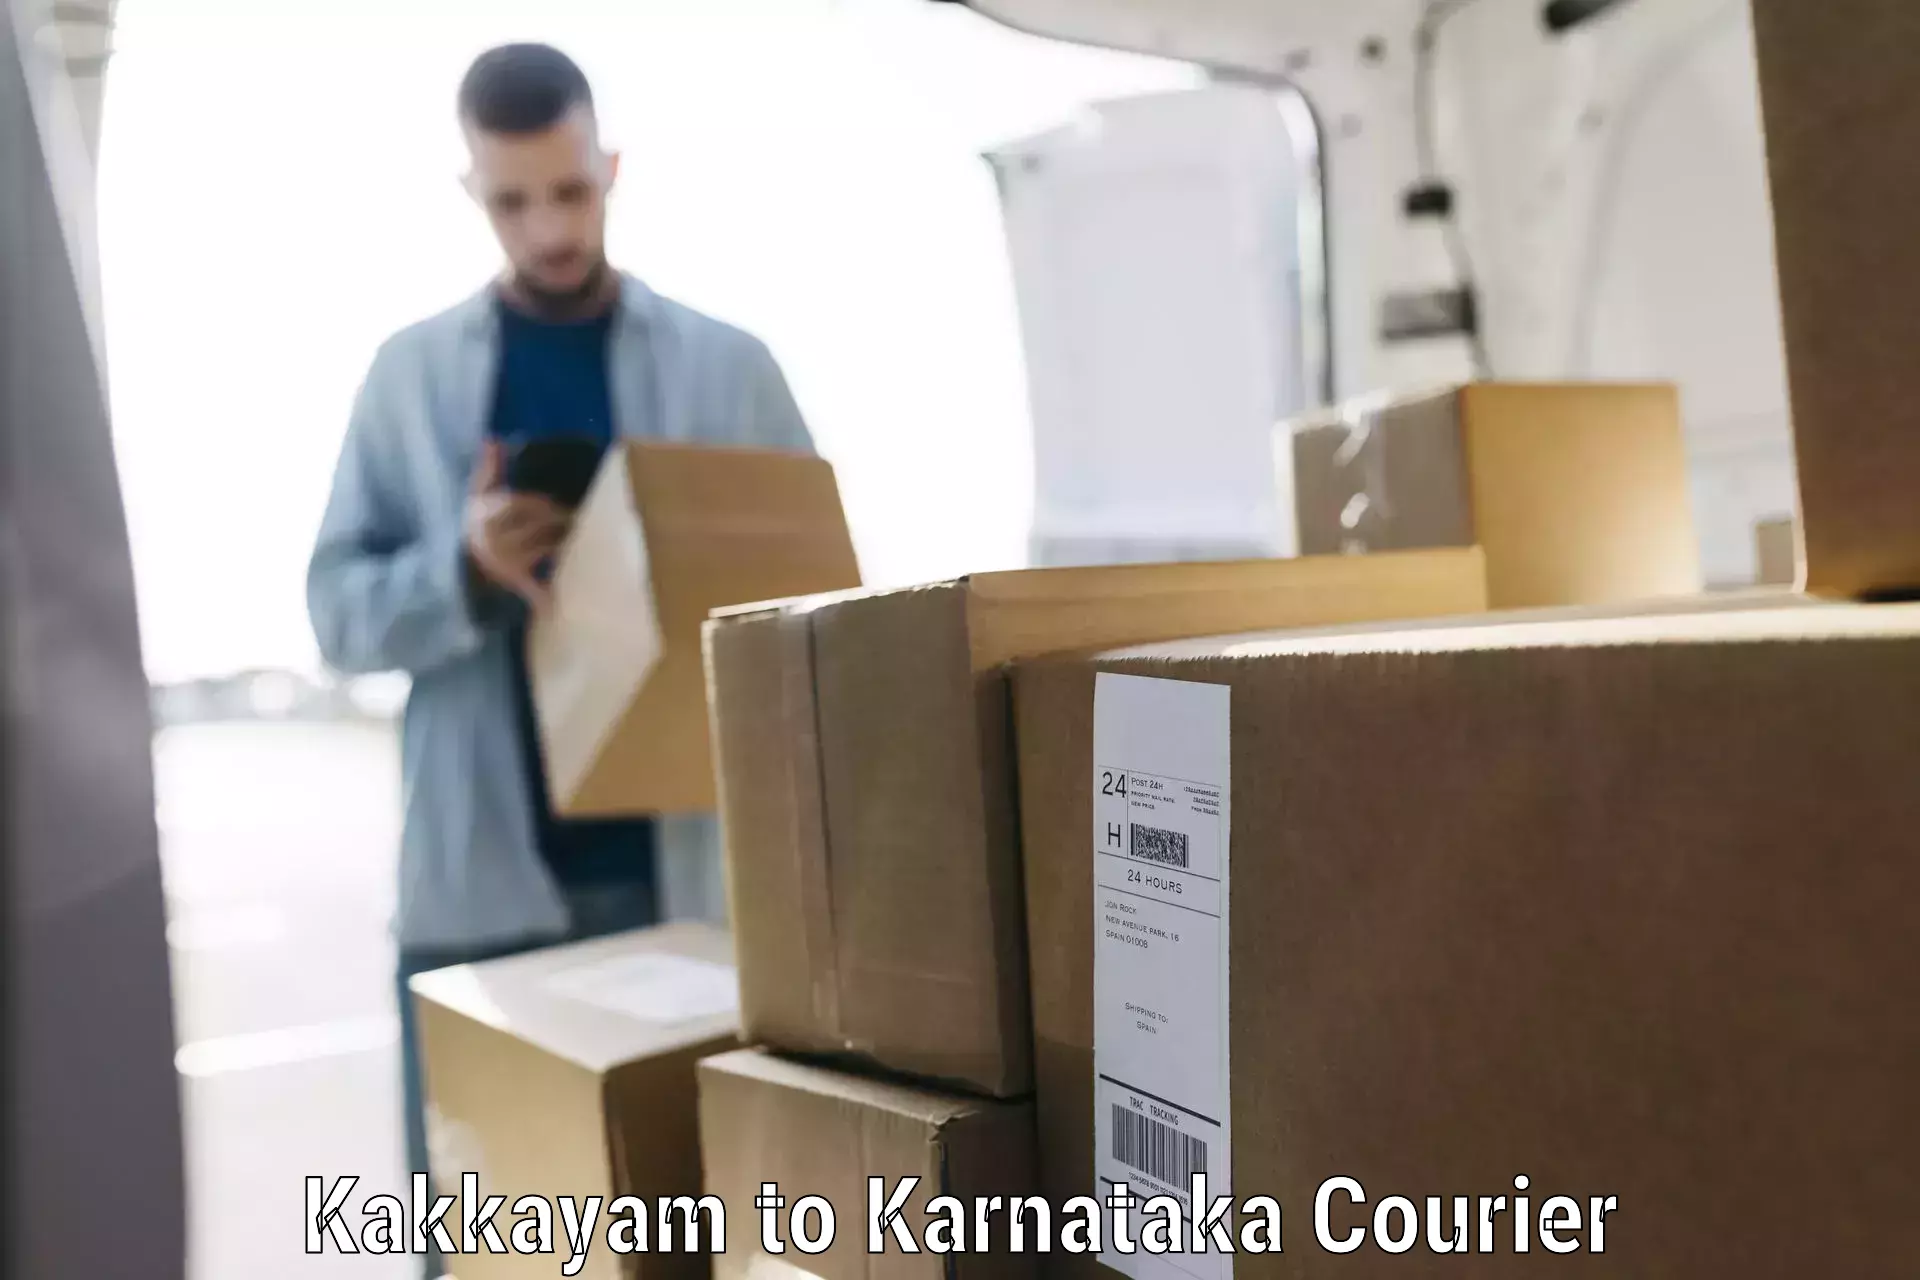 Electronic items luggage shipping Kakkayam to Belgaum